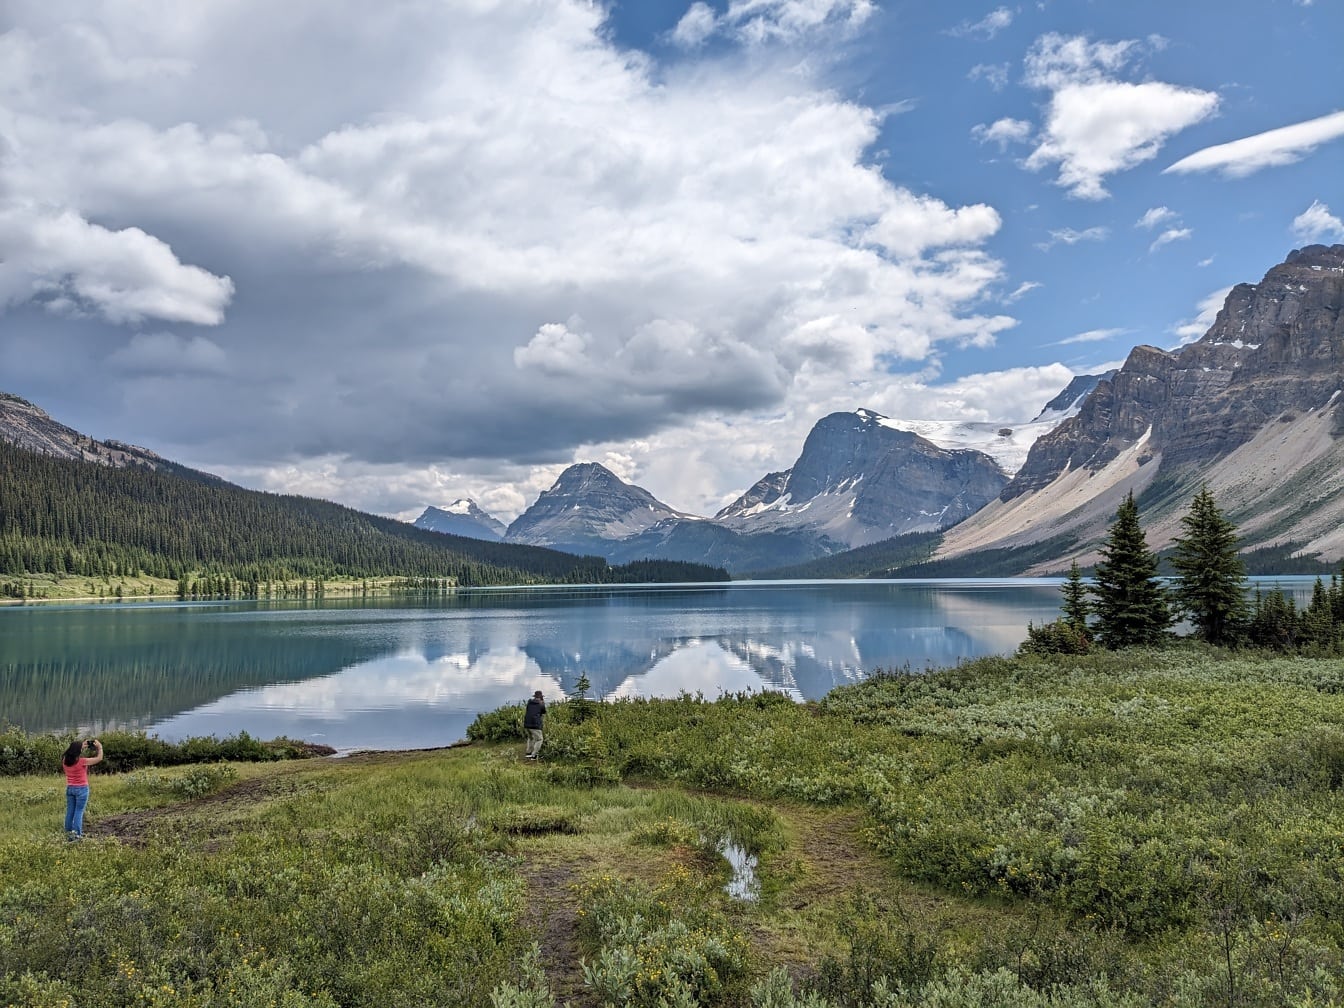 Турист фотографирует величественную панораму озера в национальном парке